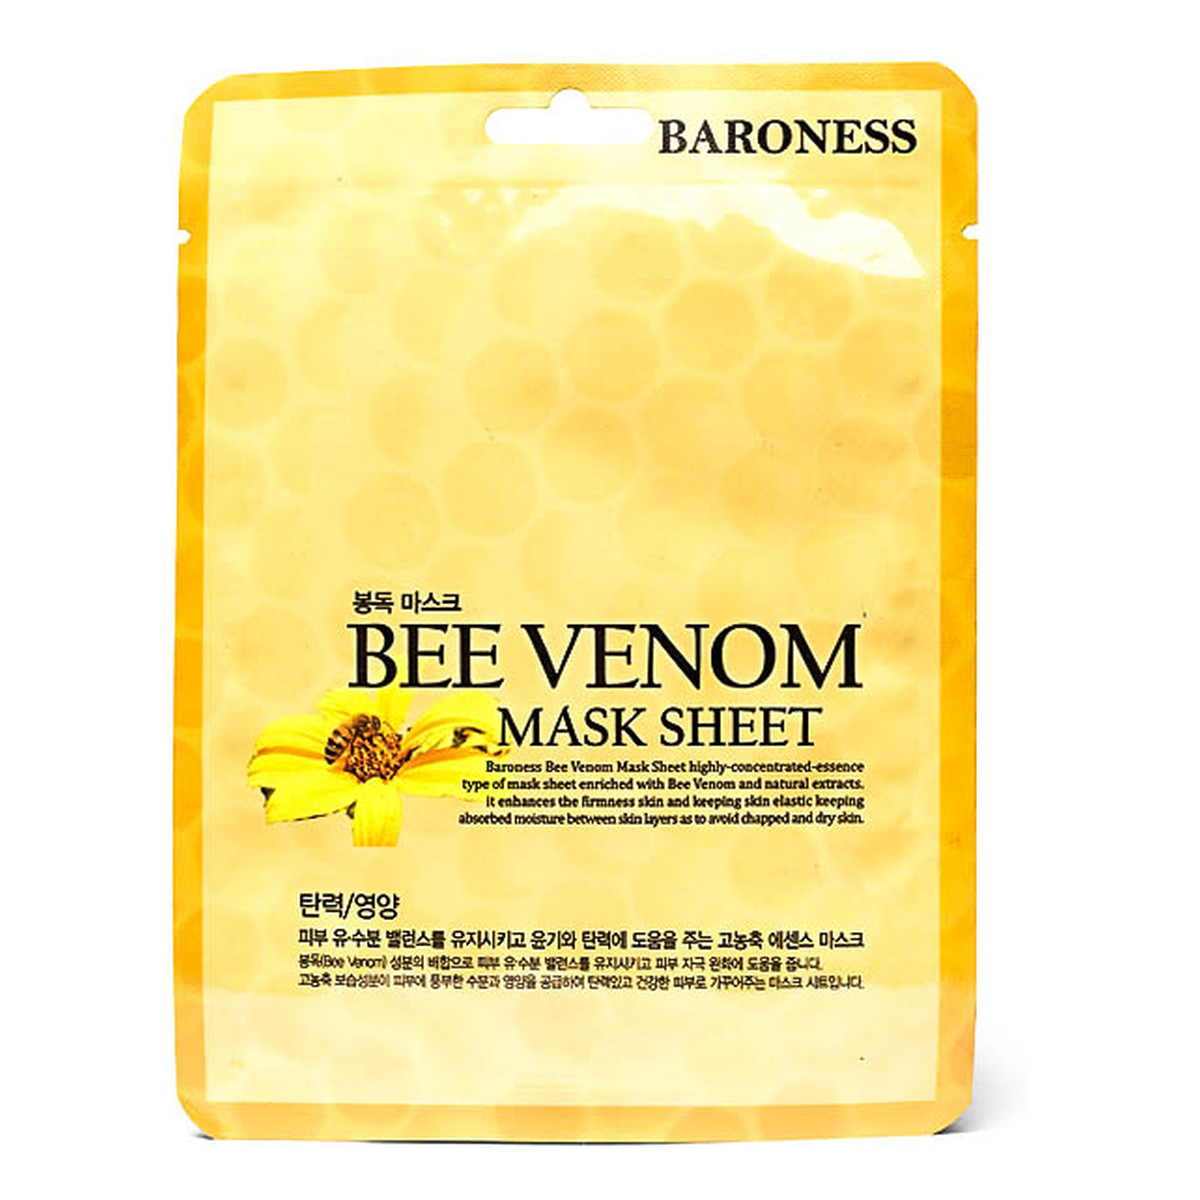 Baroness Uelastyczniająca maska w płachcie z ekstraktem jadu pszczelego 21g